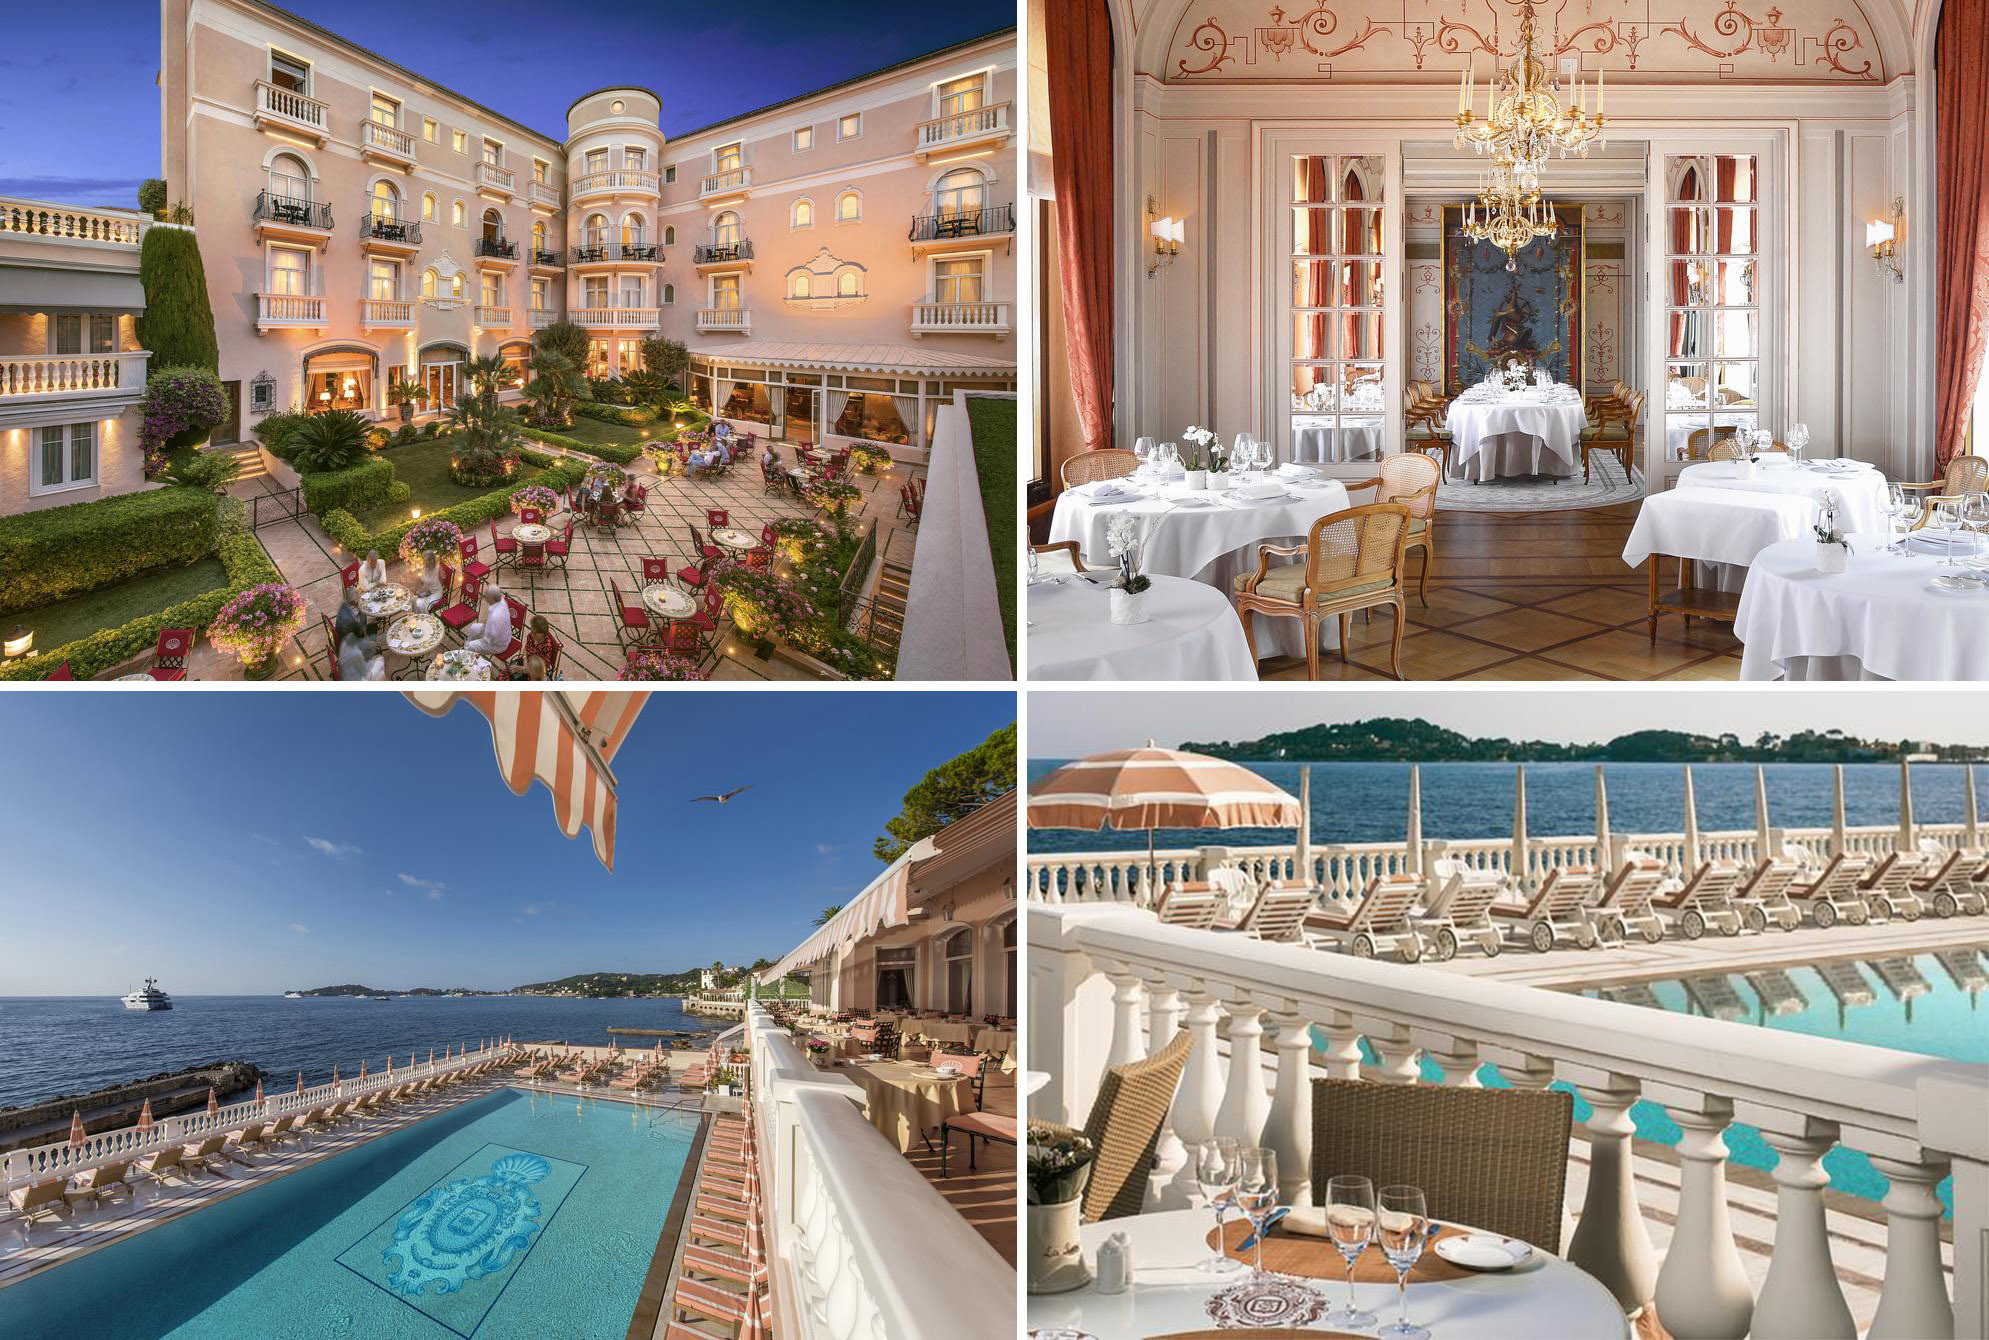 Soţii Bazac sunt clienţi fideli ai faimosului Hotel Reserve de Beaulieu, la piscina căruia îşi petrec majoritatea zilelor când se află la Monte Carlo